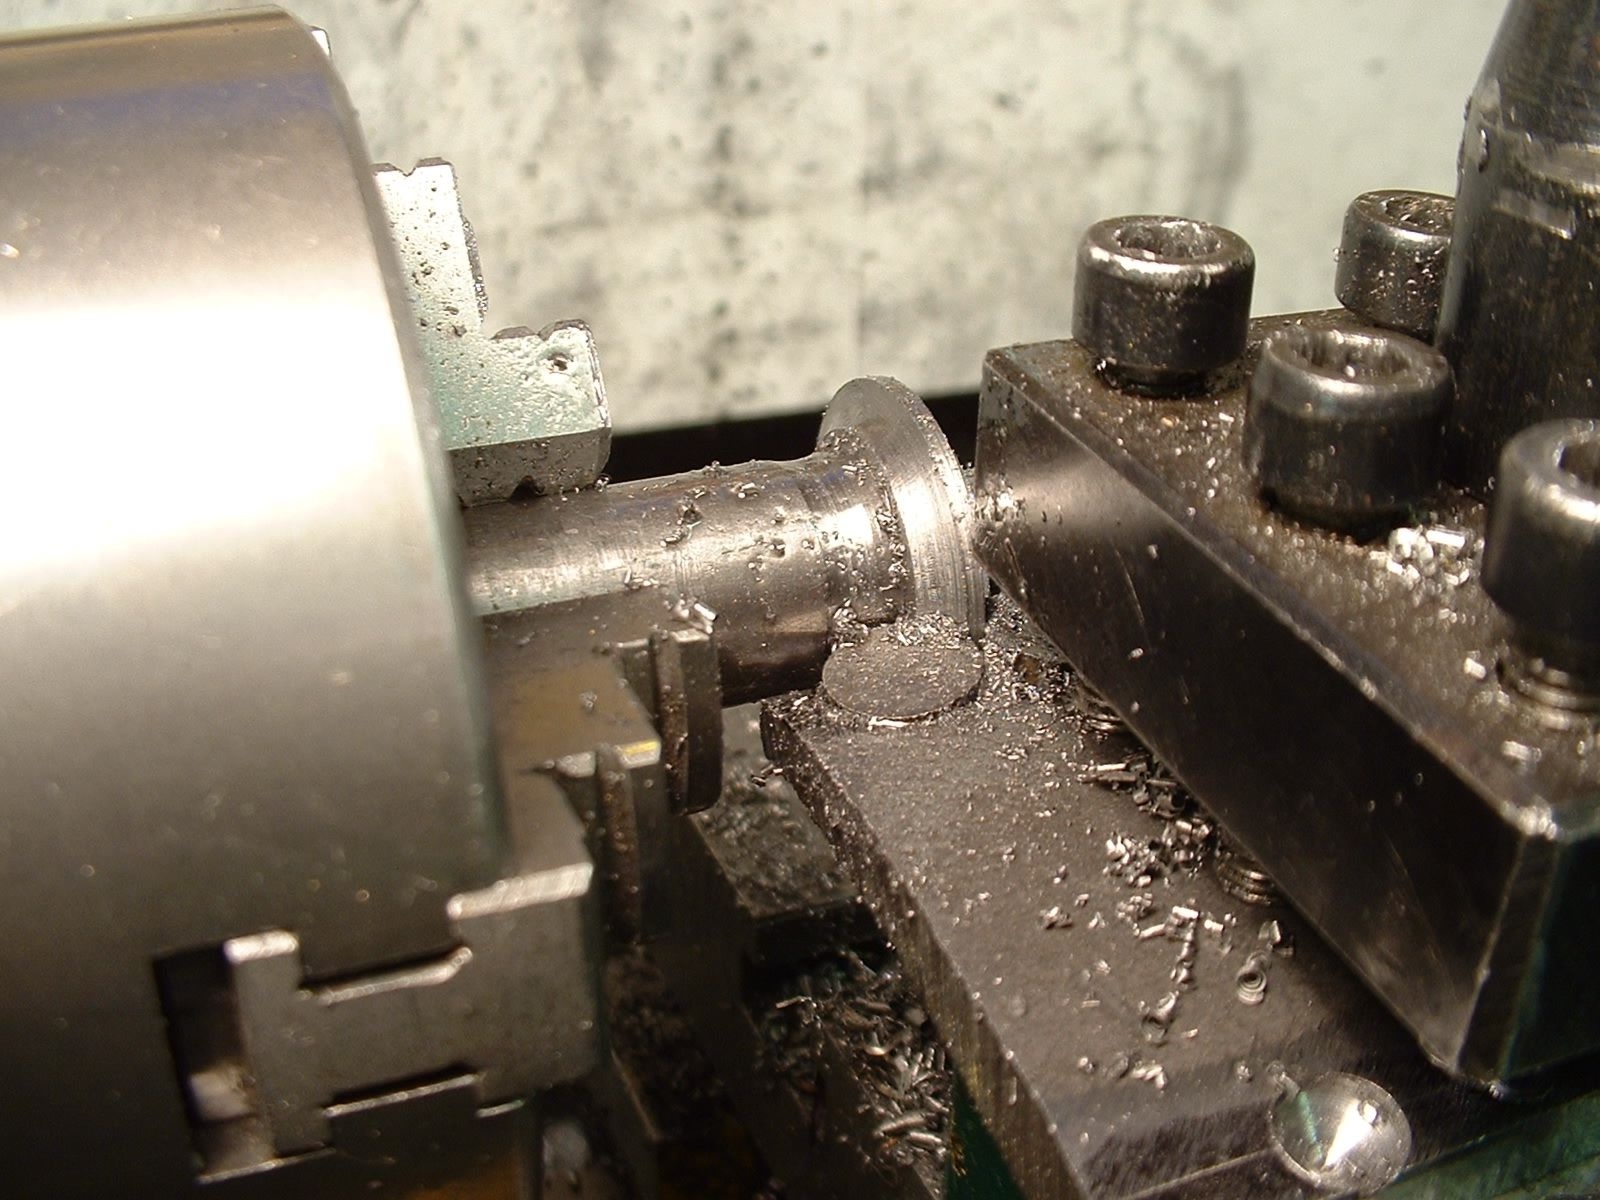 Making a gear cutter